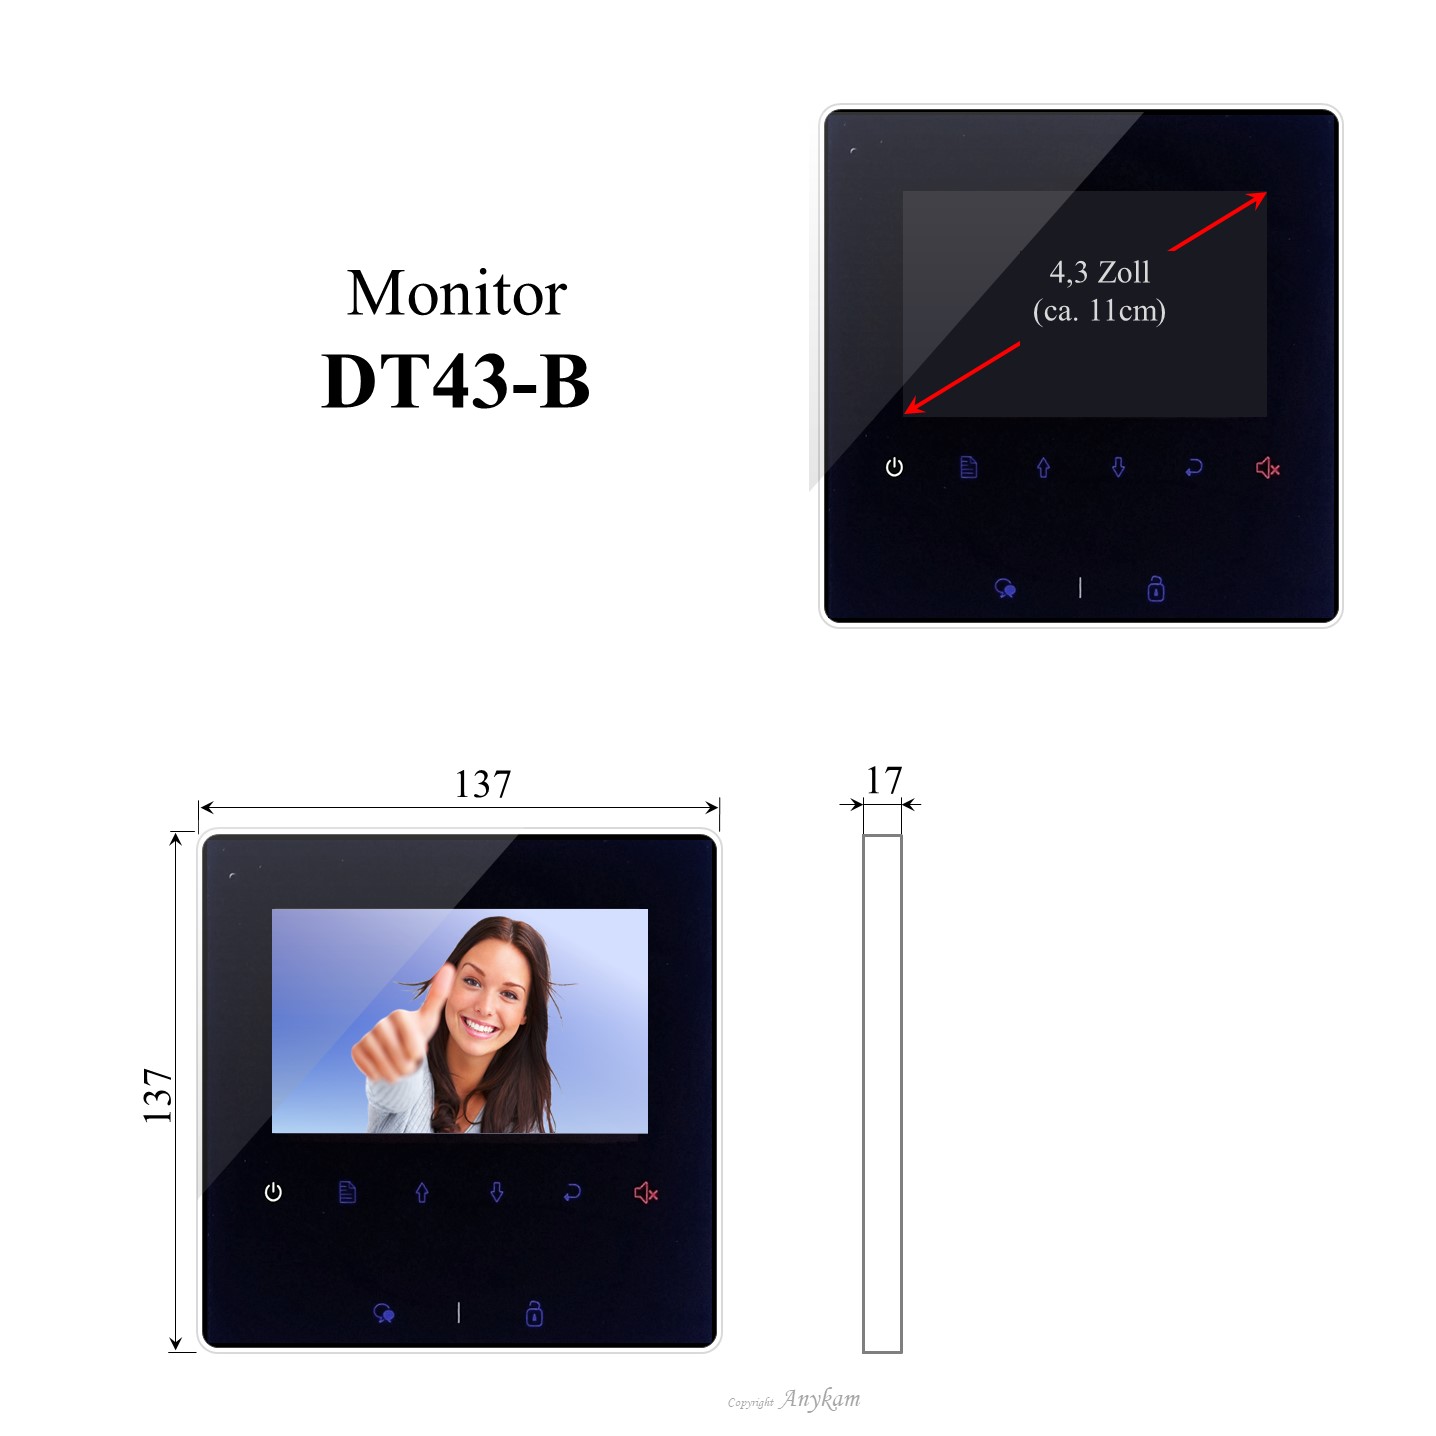 Monitor DT43-B, Innenstation der Videosprechanlage mit 2Draht Technik